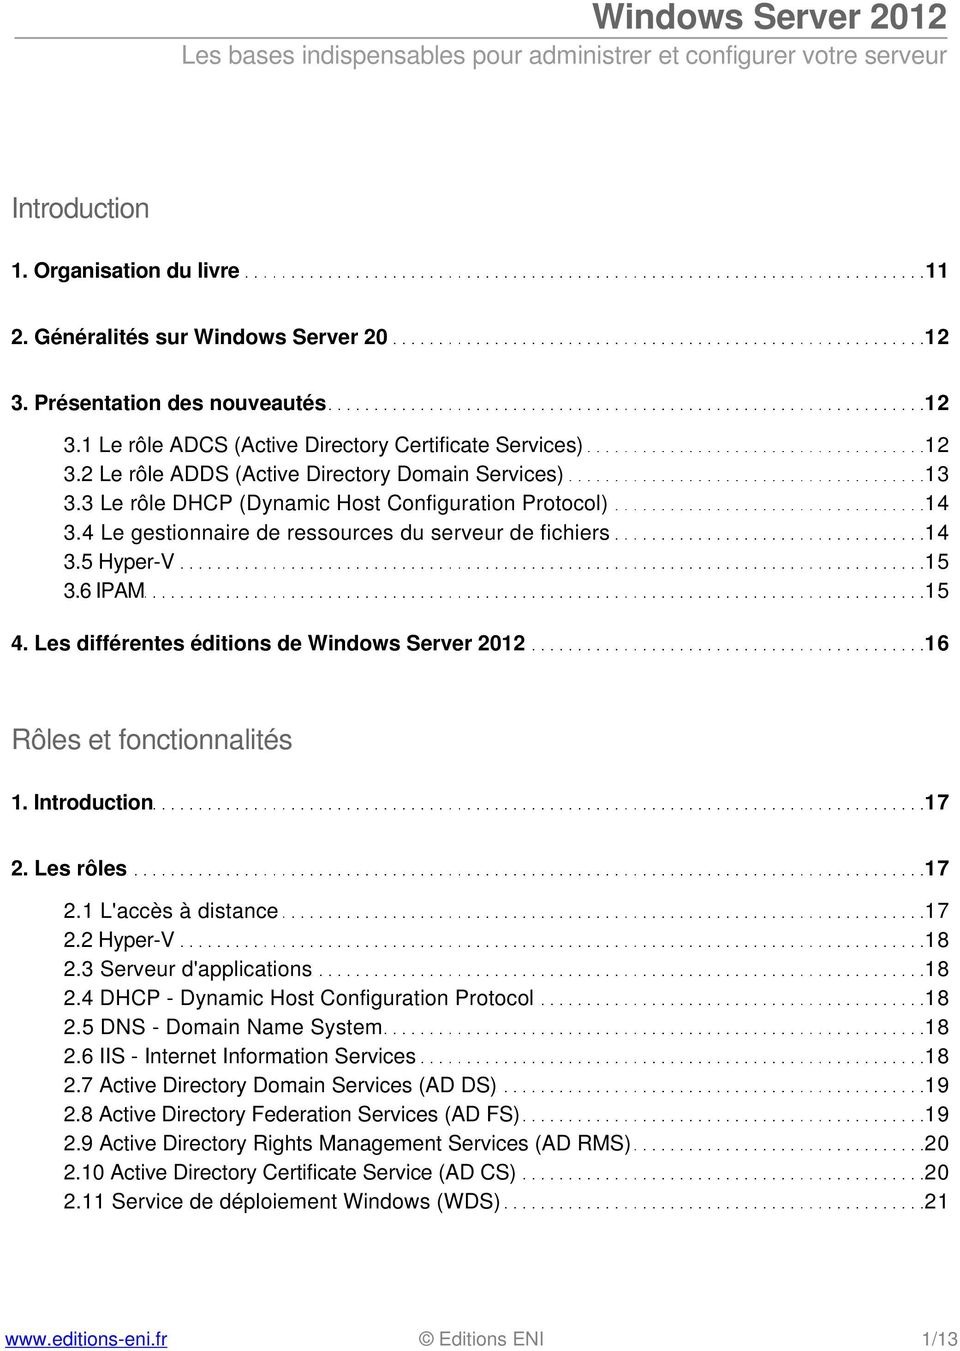 Les différentes éditions de Windows Server 2012 16 Rôles et fonctionnalités 1. Introduction 17 2. Les rôles 17 2.1 L'accès à distance 17 2.2 Hyper-V 18 2.3 Serveur d'applications 18 2.